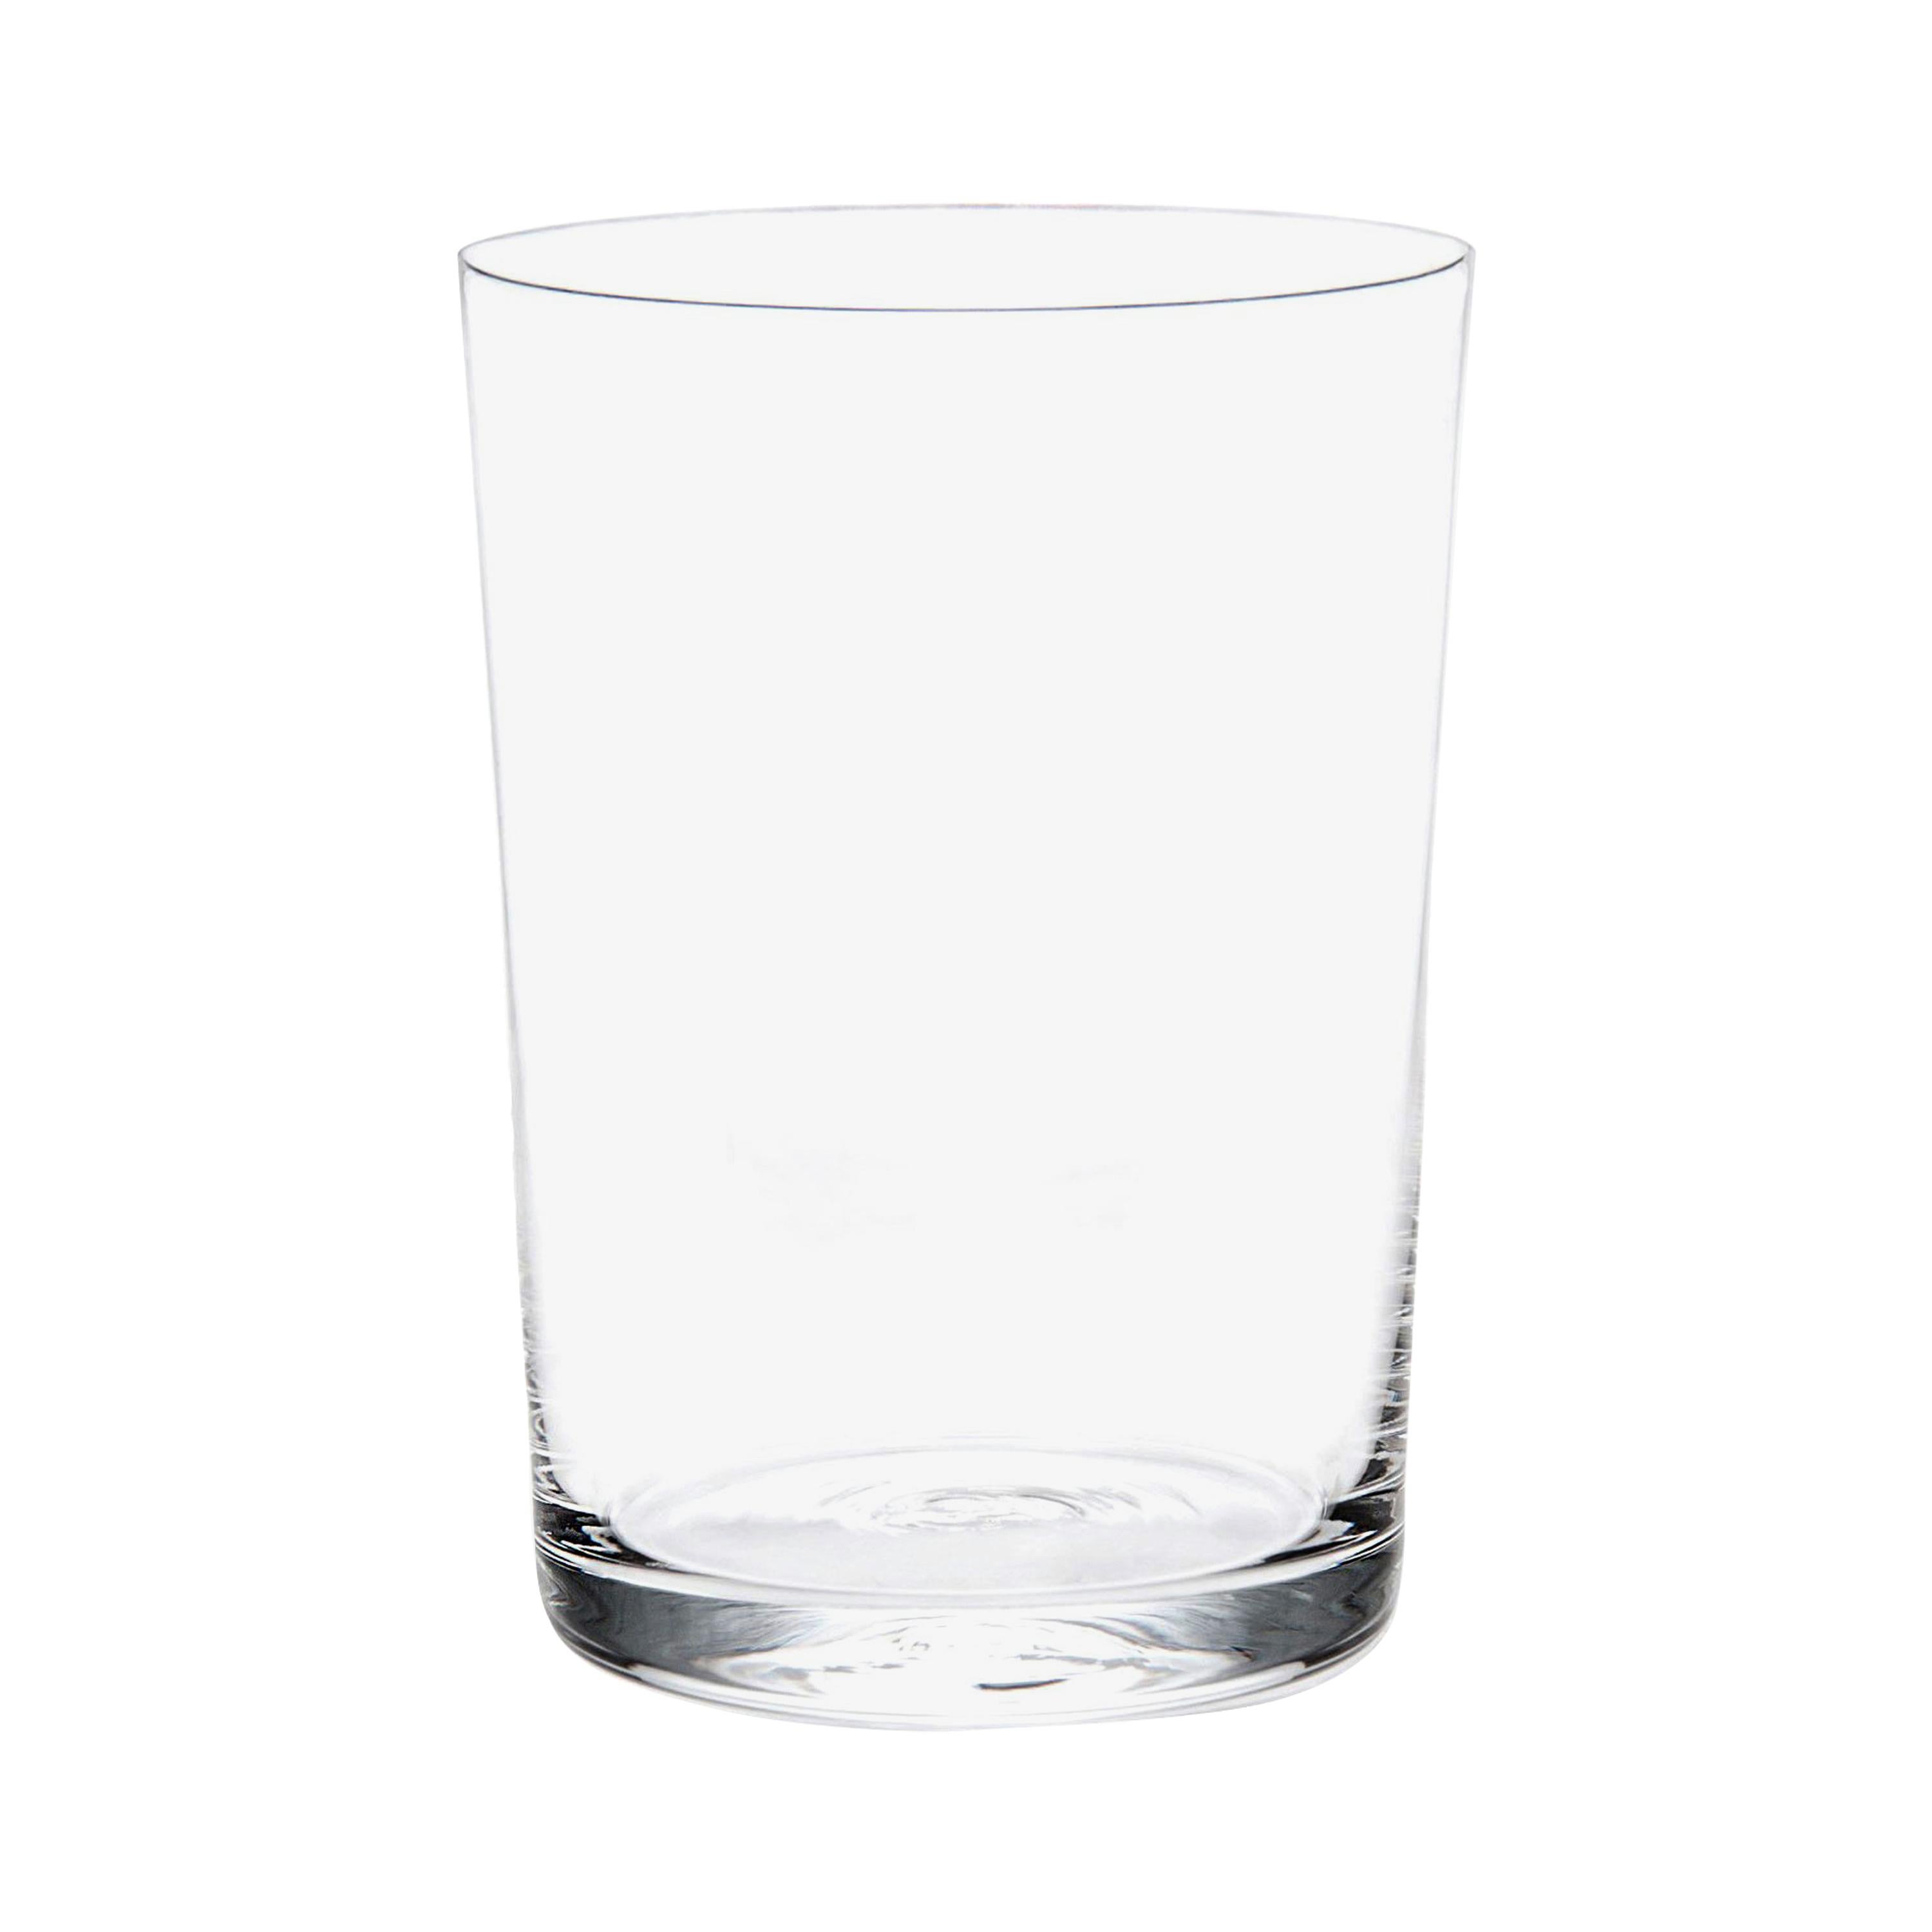 Set of 2 Deborah Ehrlich Simple Crystal Water Glasses, Hand Blown in Sweden